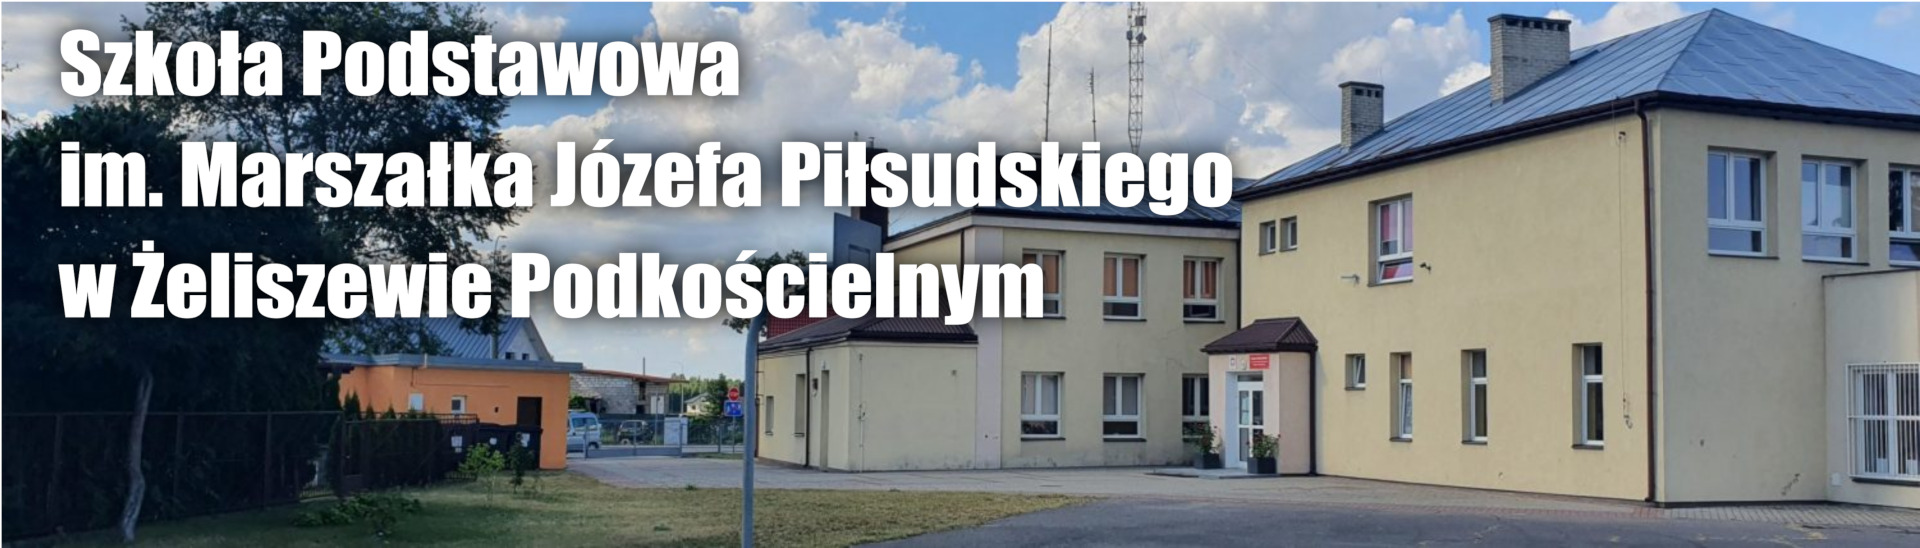 Szkoła Podstawowa im. Marszałka Józefa Piłsudskiego